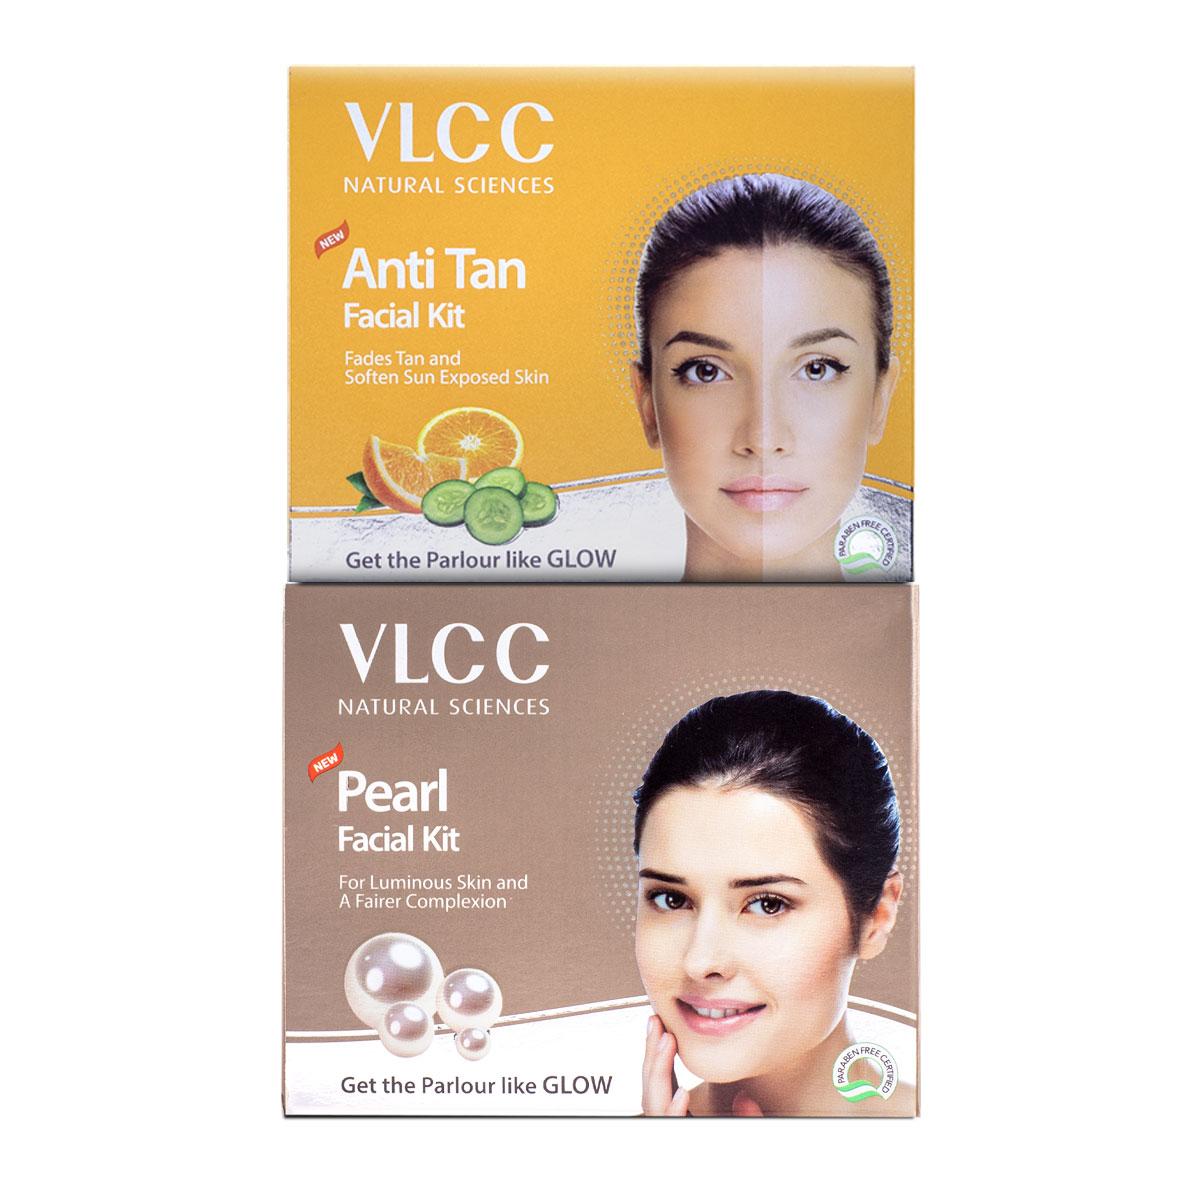 VLCC Pearl Facial Kit & Anti Tan Facial Kit